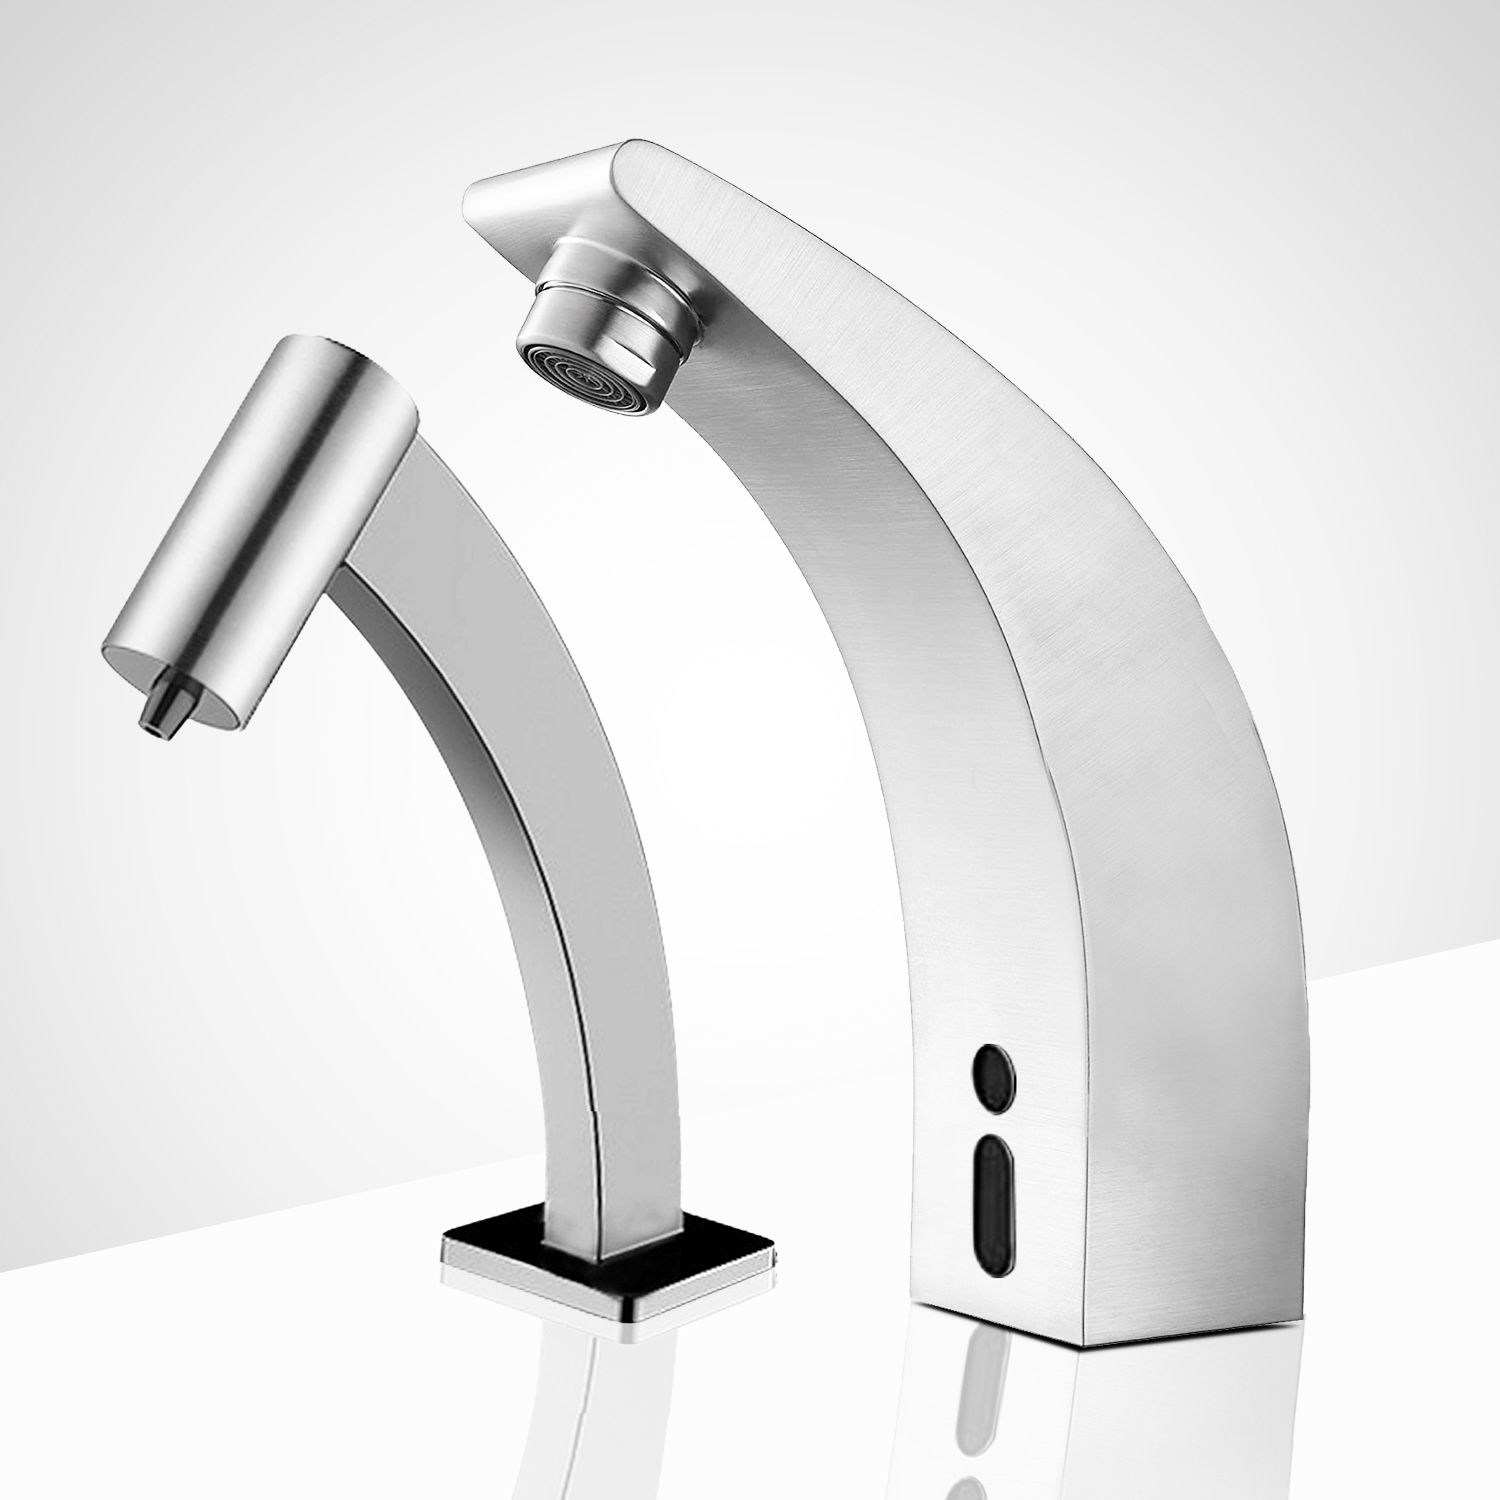 Fontana St. Gallen Touchless  Motion Sensor Faucet & Automatic Soap Dispenser for Restrooms